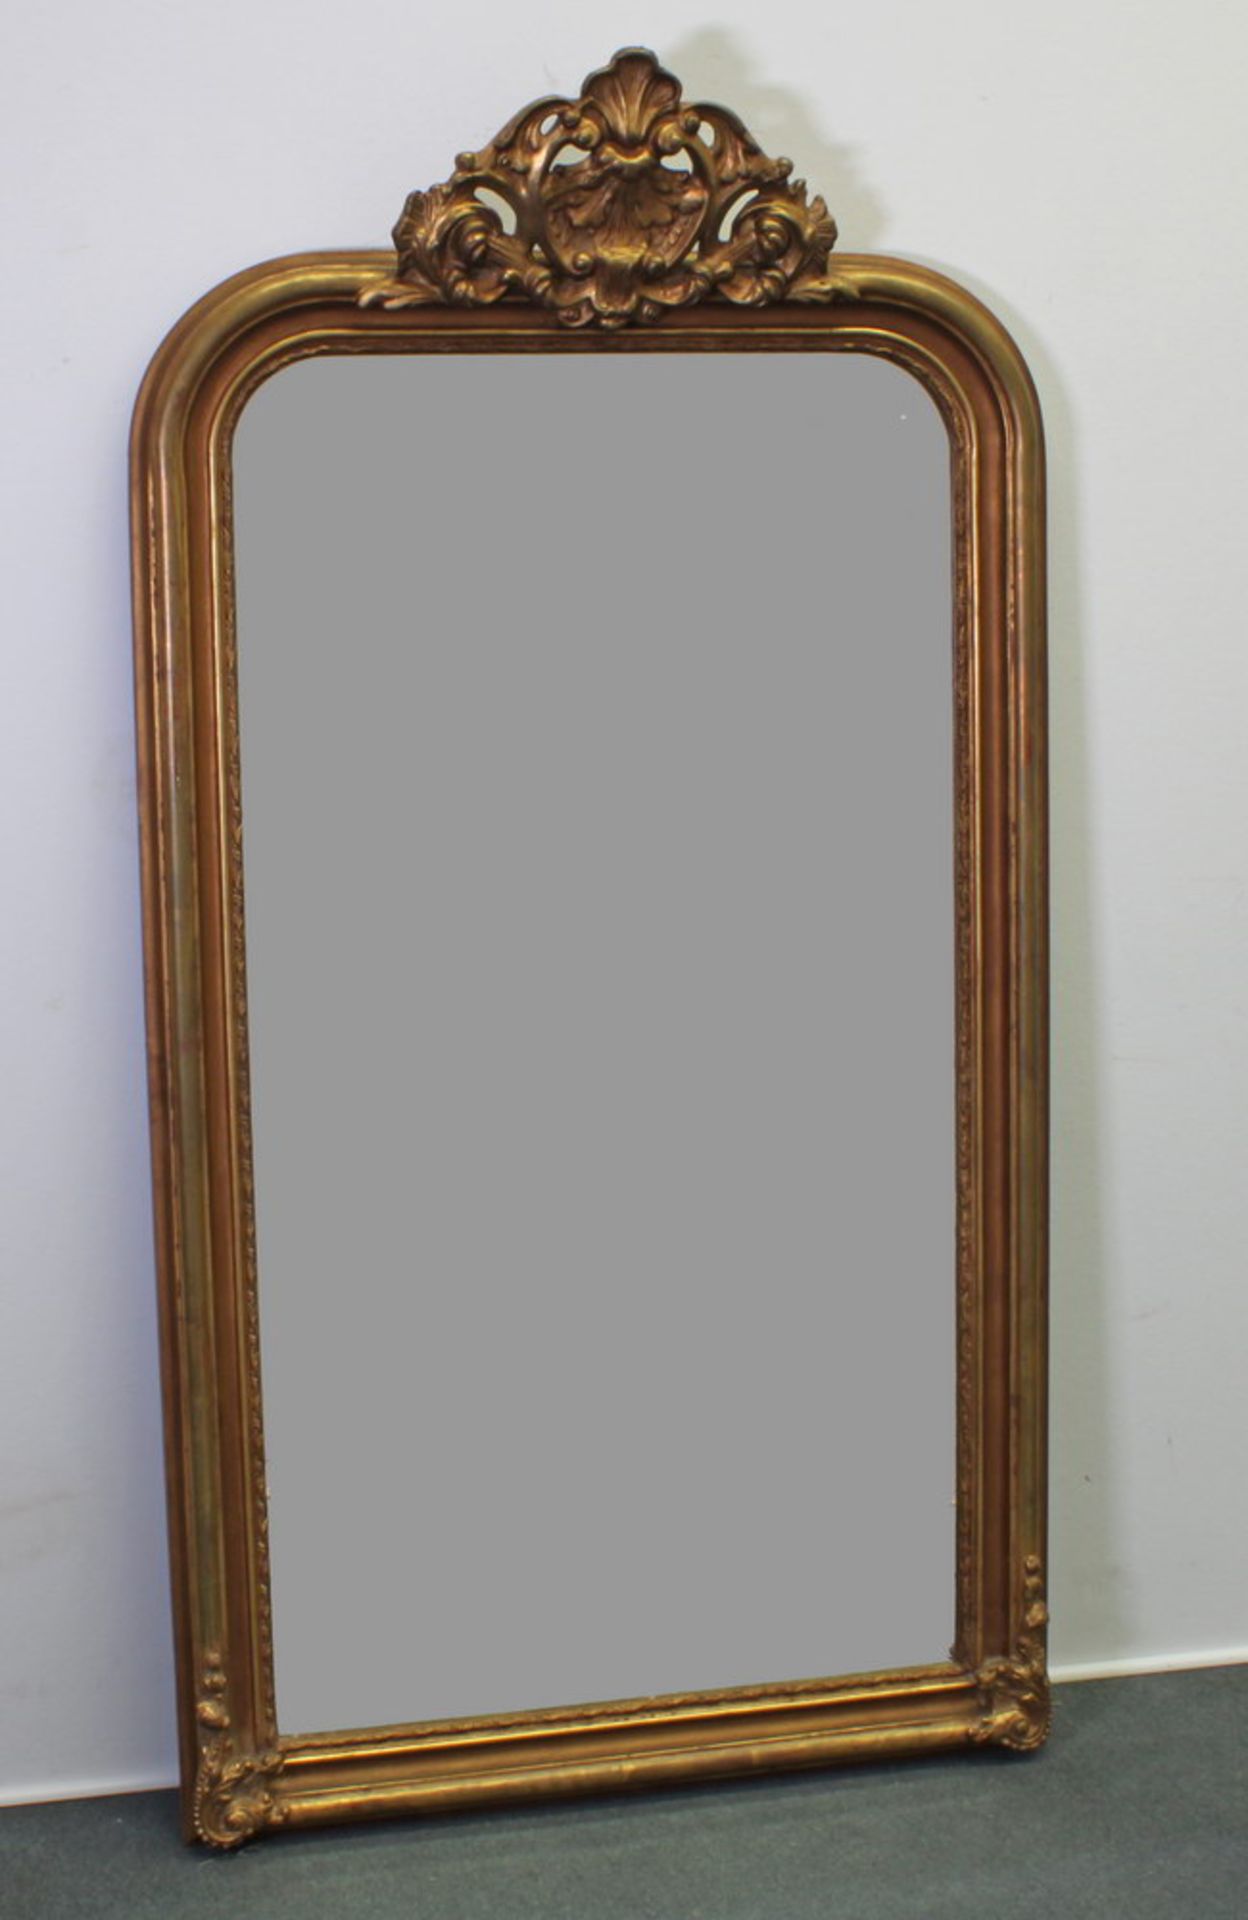 Wandspiegel, neuzeitlich, Holz, goldbronziert, bekrönende Kartusche, facettiertes Spiegelglas, 168 x